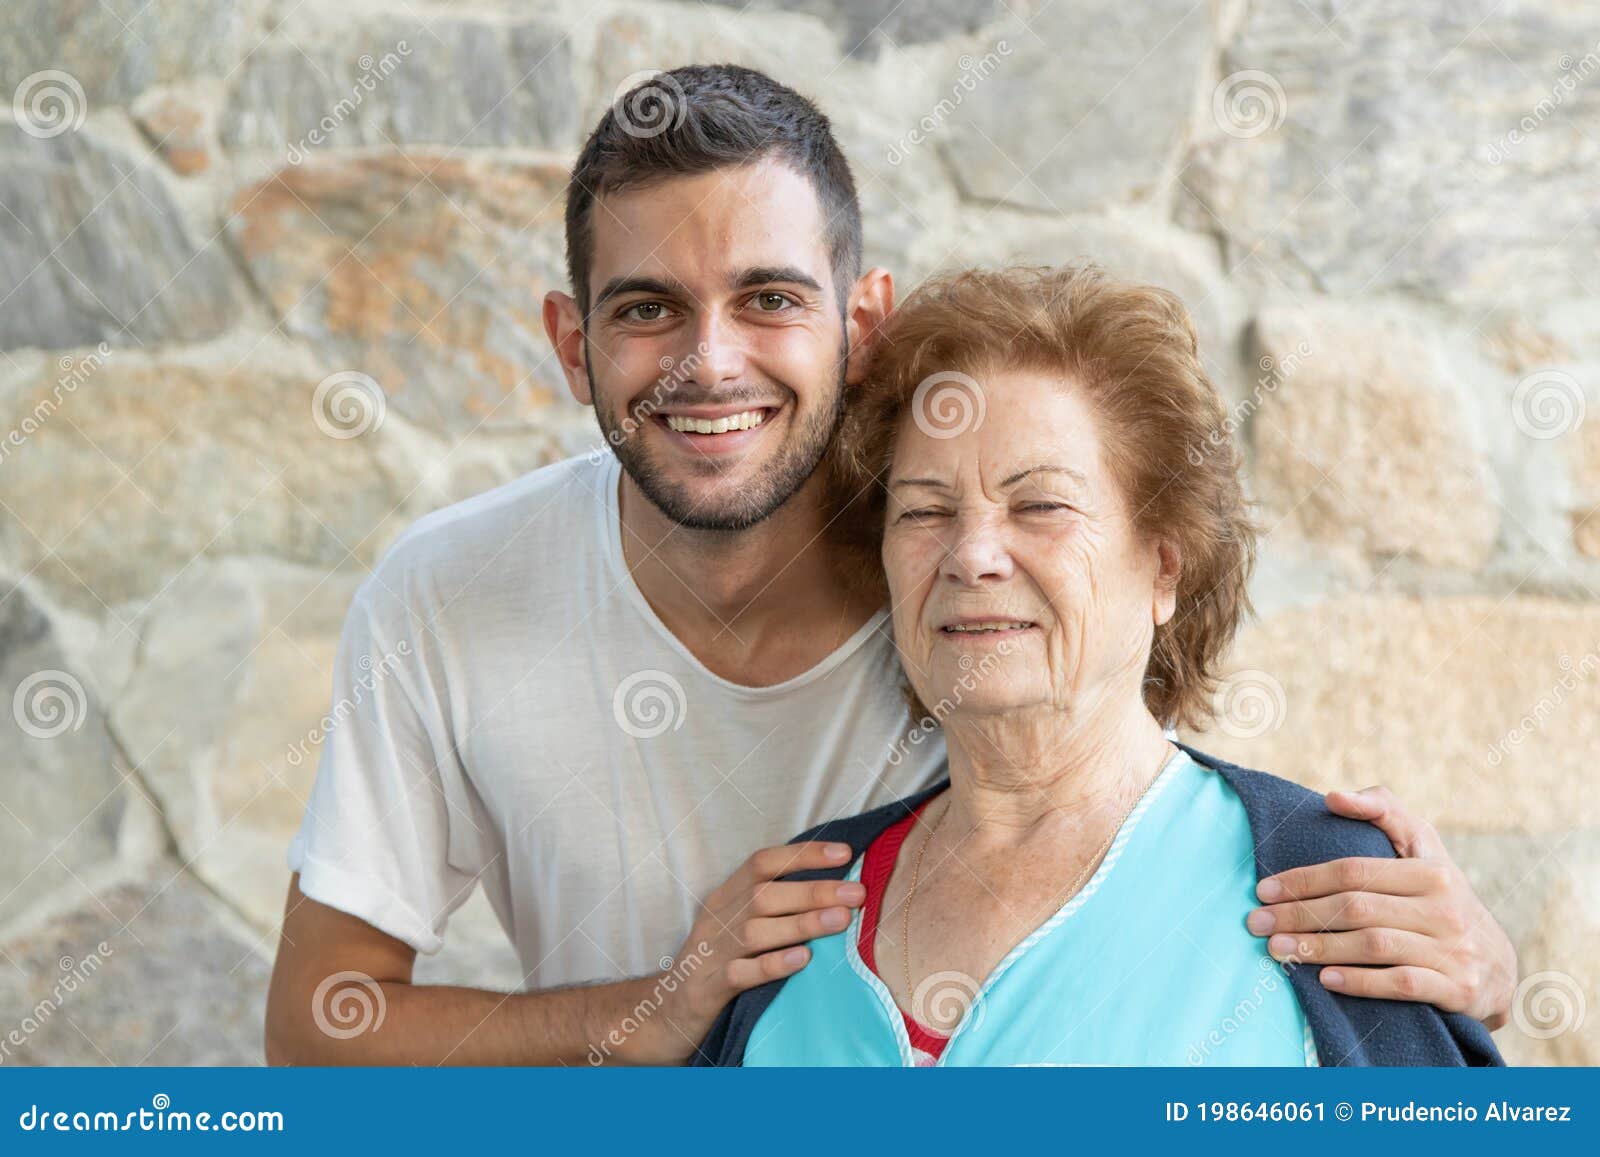 祖母和孙子 库存照片. 图片 包括有 子项, 交互选择, 的闪烁, 乐趣, 妇女, 长辈, 互联网, 年轻 - 56085000